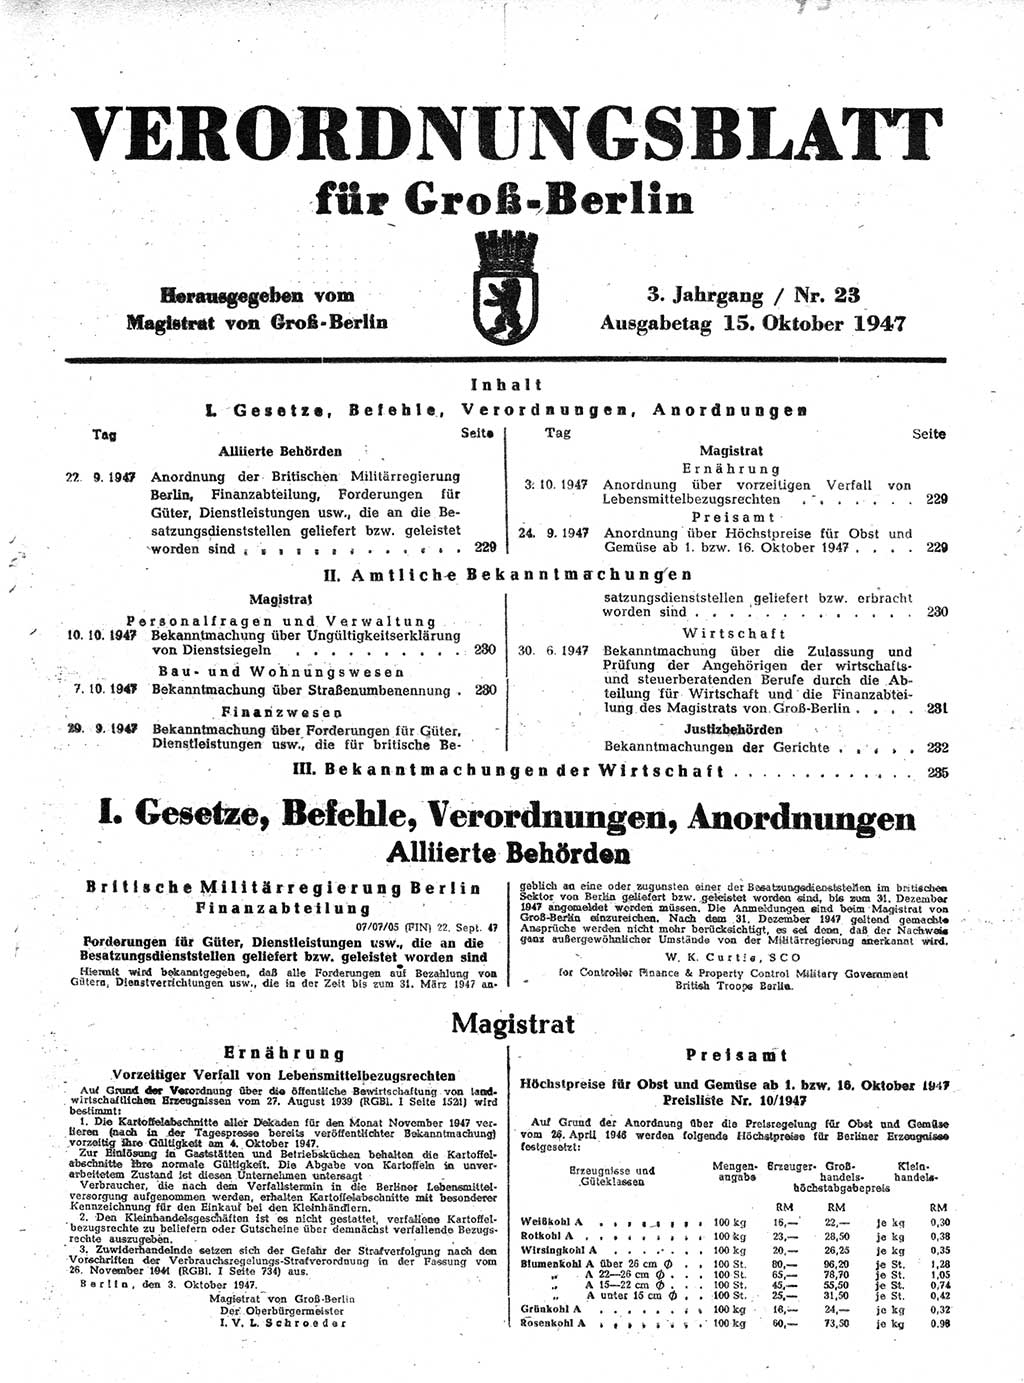 Verordnungsblatt (VOBl.) für Groß-Berlin 1947, Seite 229 (VOBl. Bln. 1947, S. 229)